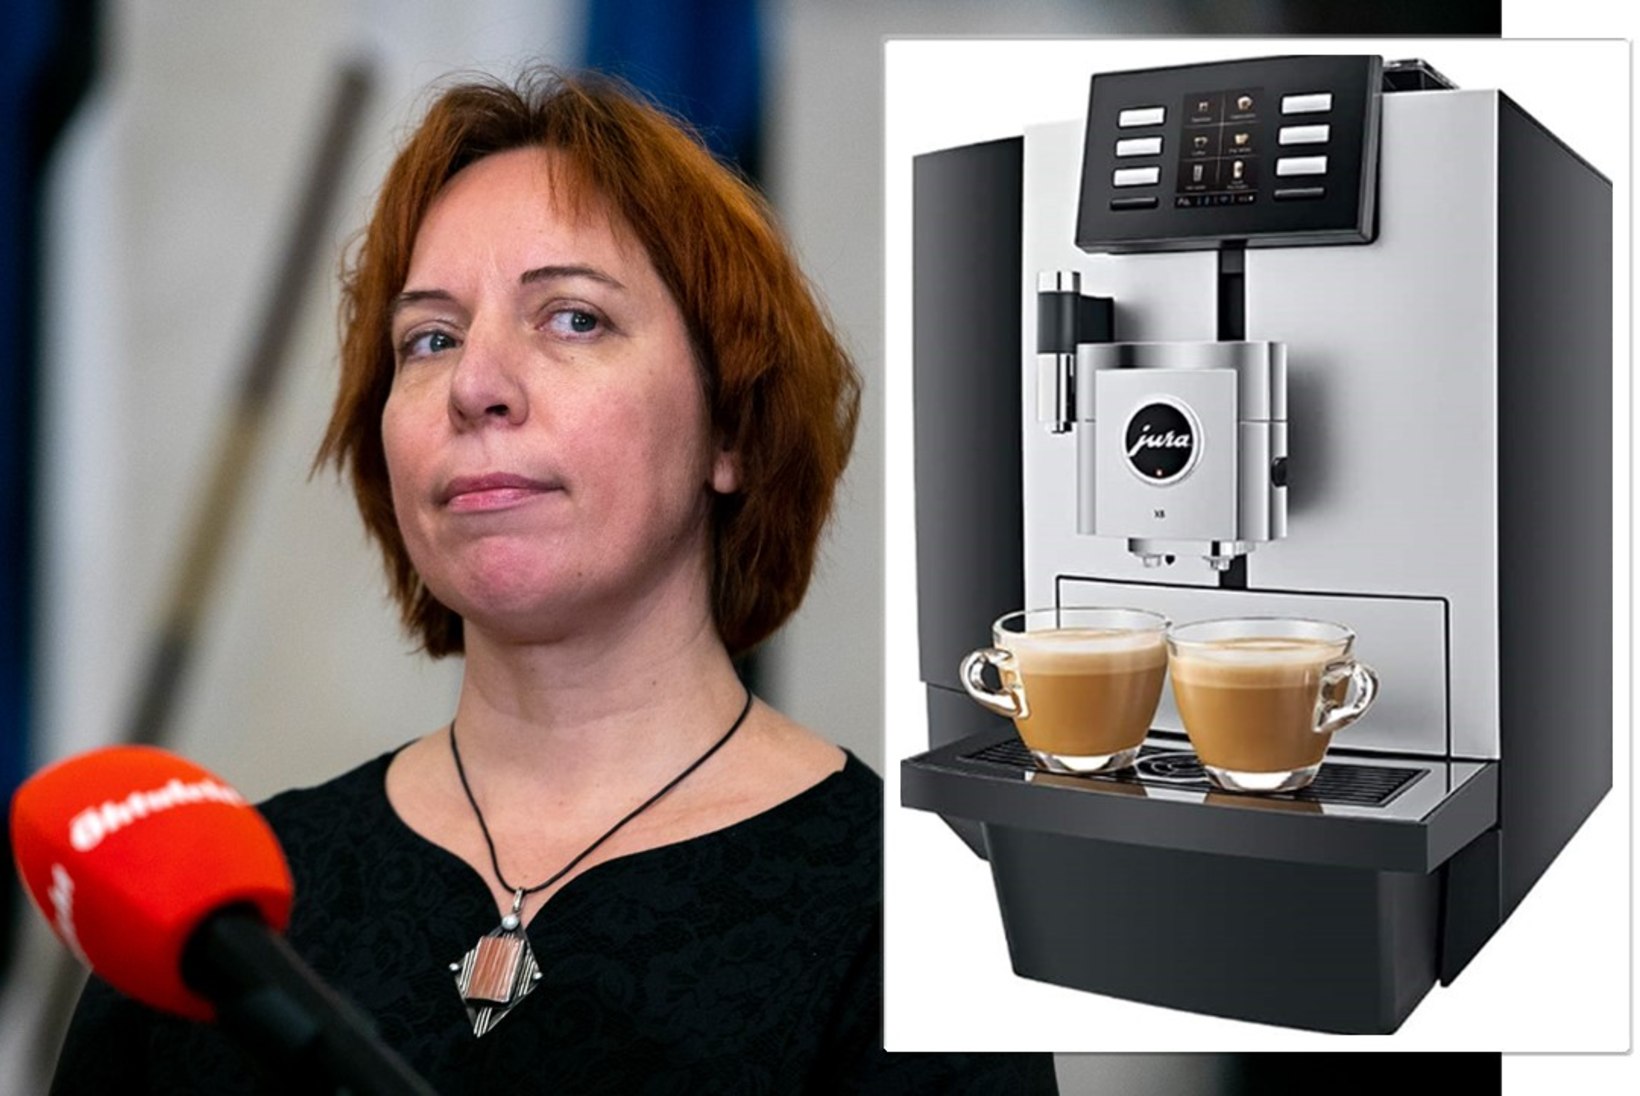 Luksus maksumaksja kulul: Repsi kodus vaaritas kohvi tuhandeid eurosid maksev tippmudel